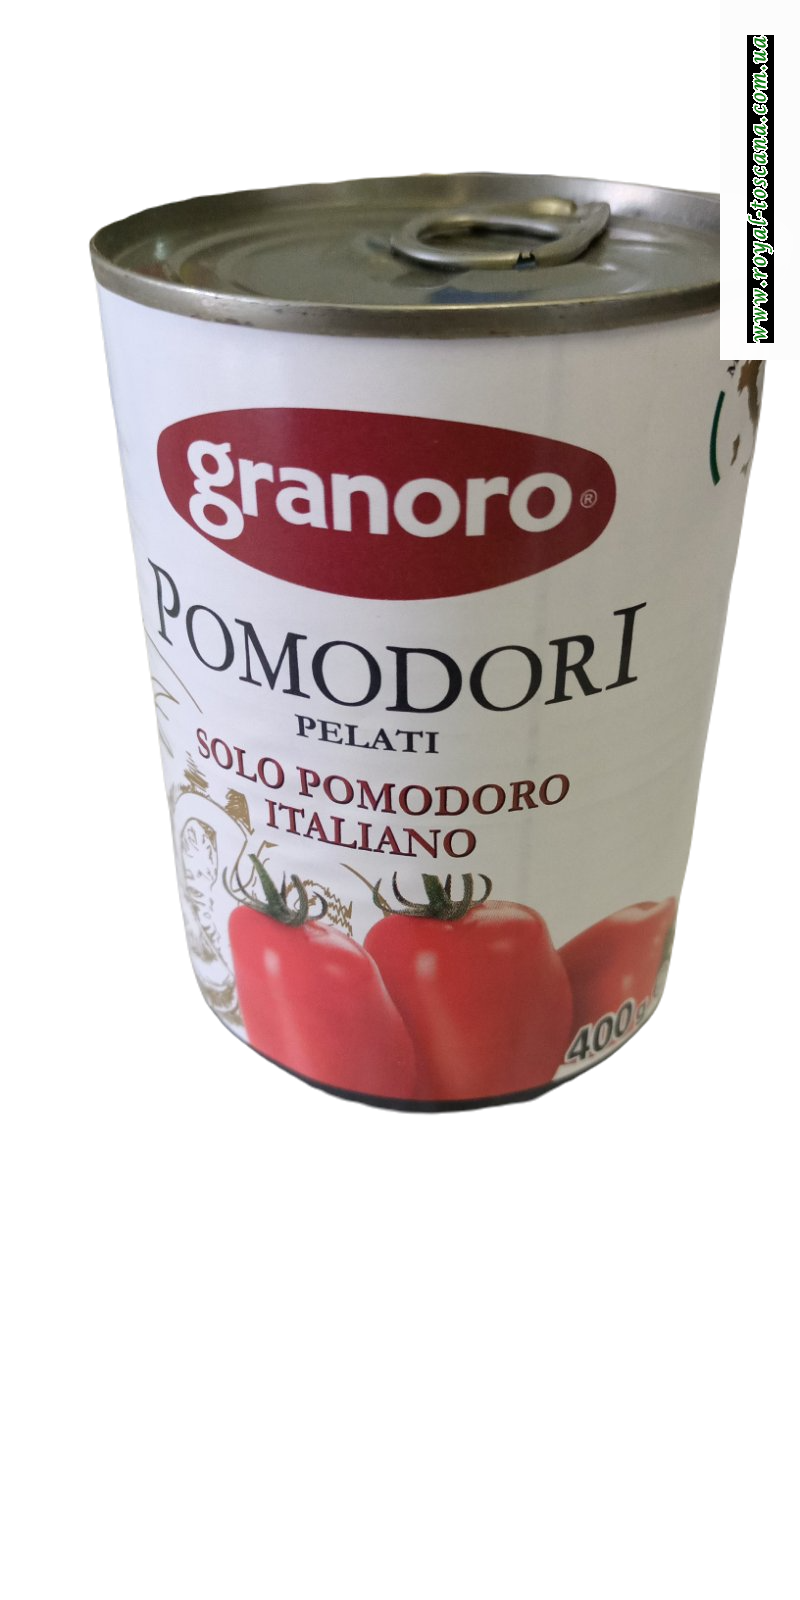 Помидоры очищенные Pomodoro pelatti 